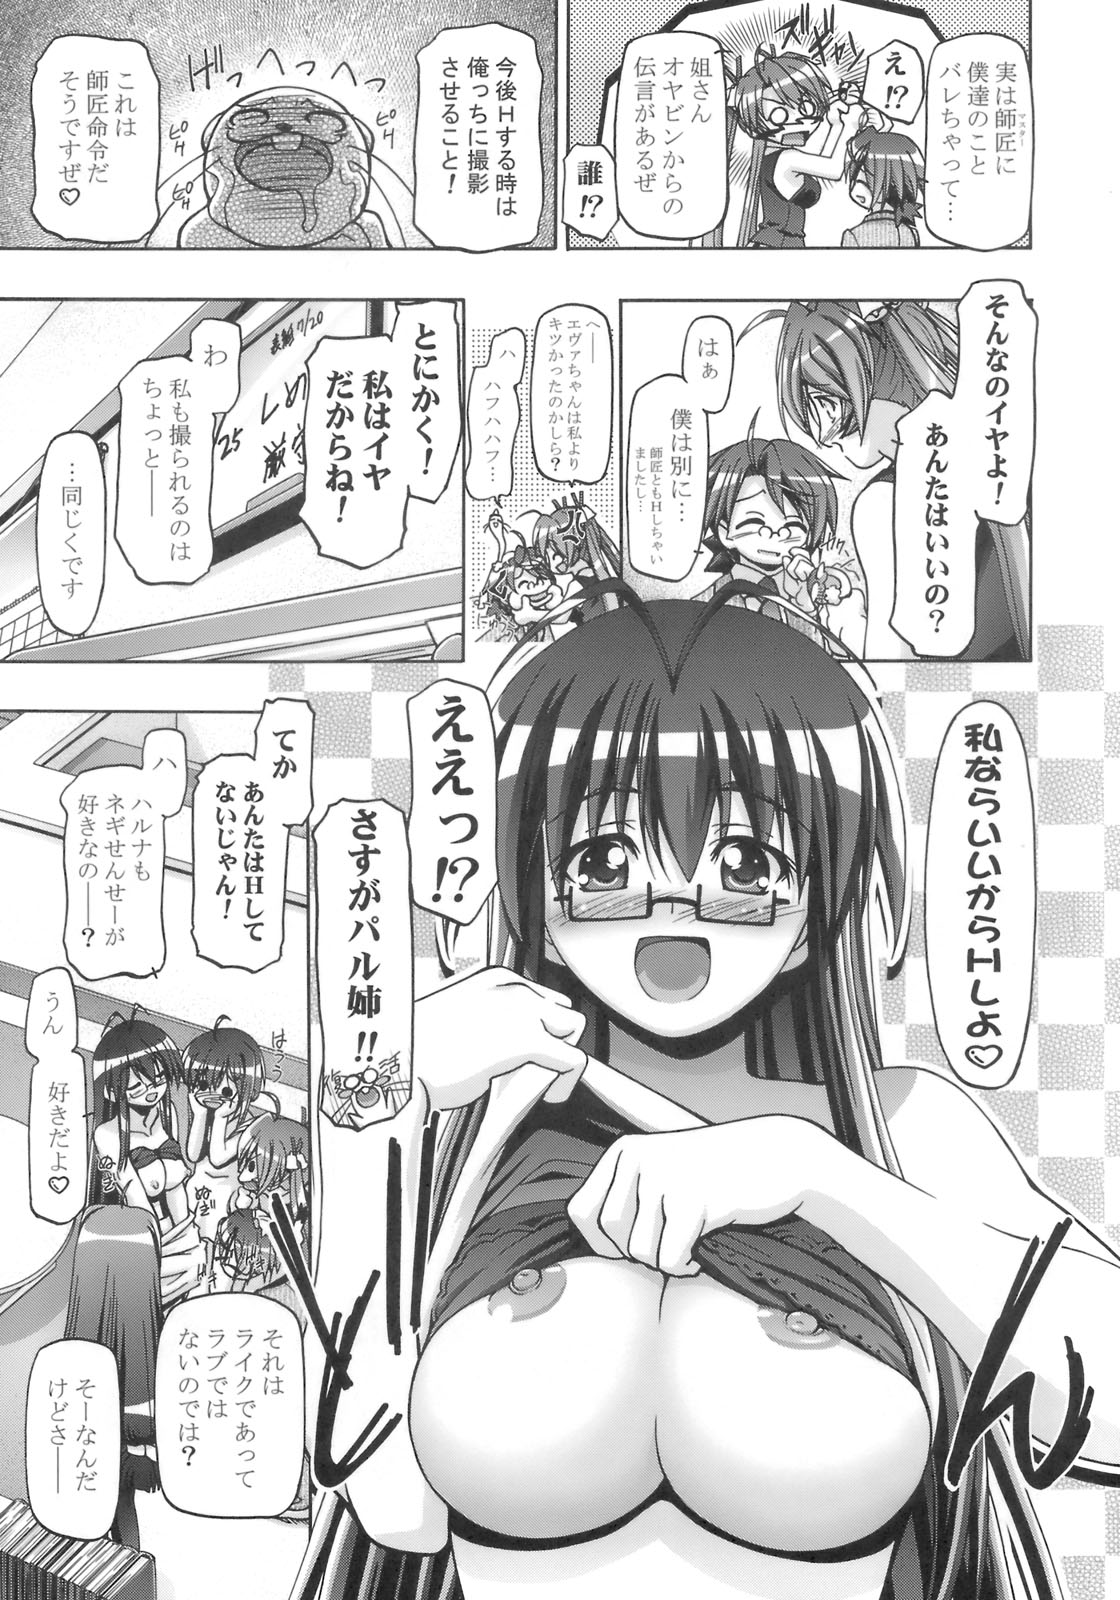 (SC39) [Gambler Club (Kousaka Jun)] Mahora Gakuen Tyuutoubu 3-A 3 Jikanme Negi X Haruna (Mahou Sensei Negima!) page 4 full